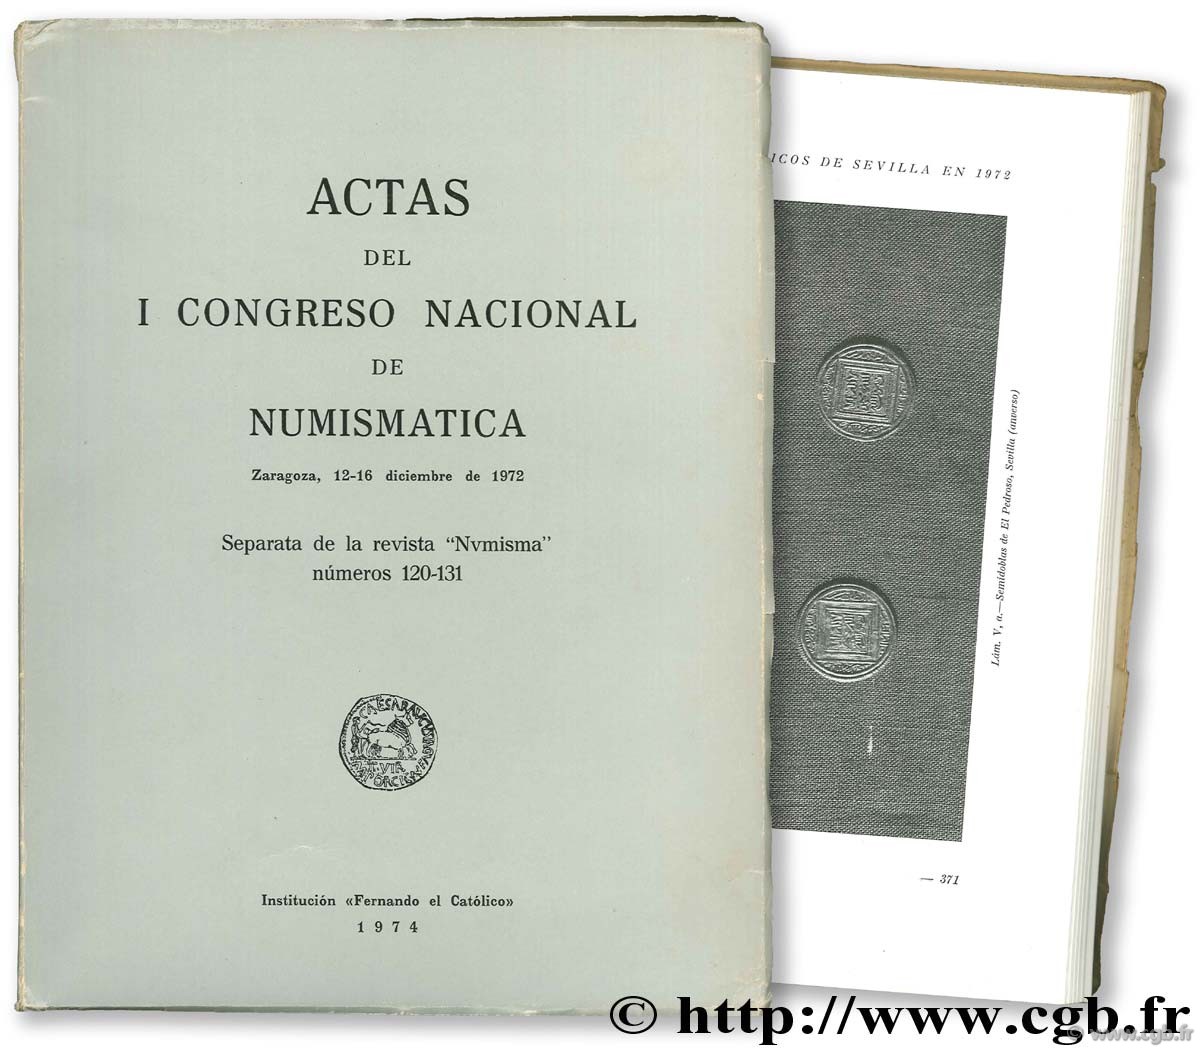 Actas del I Congreso Nacional de numismatica. Zaragoza, 12-16 diciembre de 1972 